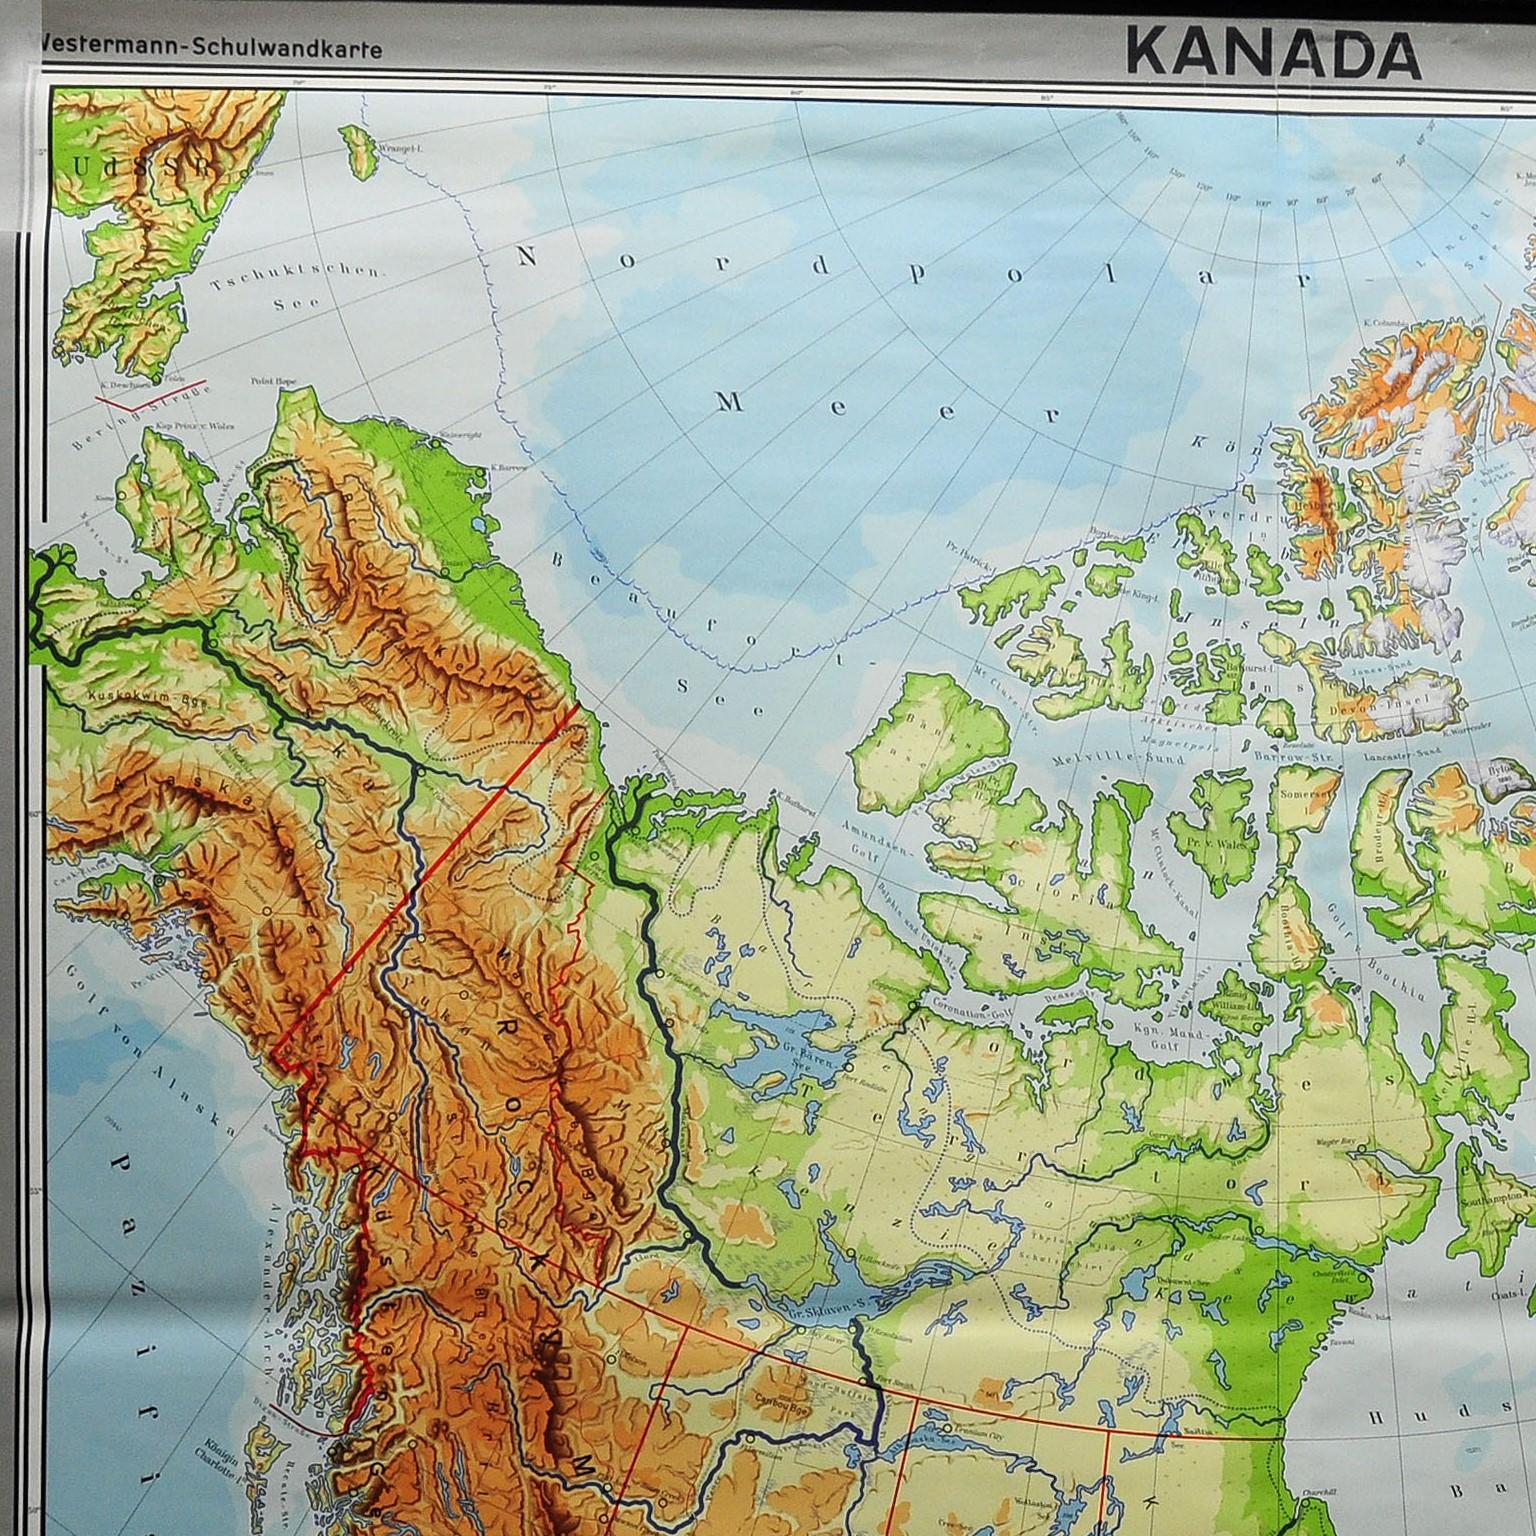 Eine klassische Pull-Down-Karte von Kanada und Grönland (Nordamerikanischer Kontinent). Wird als Unterrichtsmaterial in deutschen Schulen verwendet. Farbenfroher Druck auf mit Leinwand verstärktem Papier. Herausgegeben von Georg Westermann,